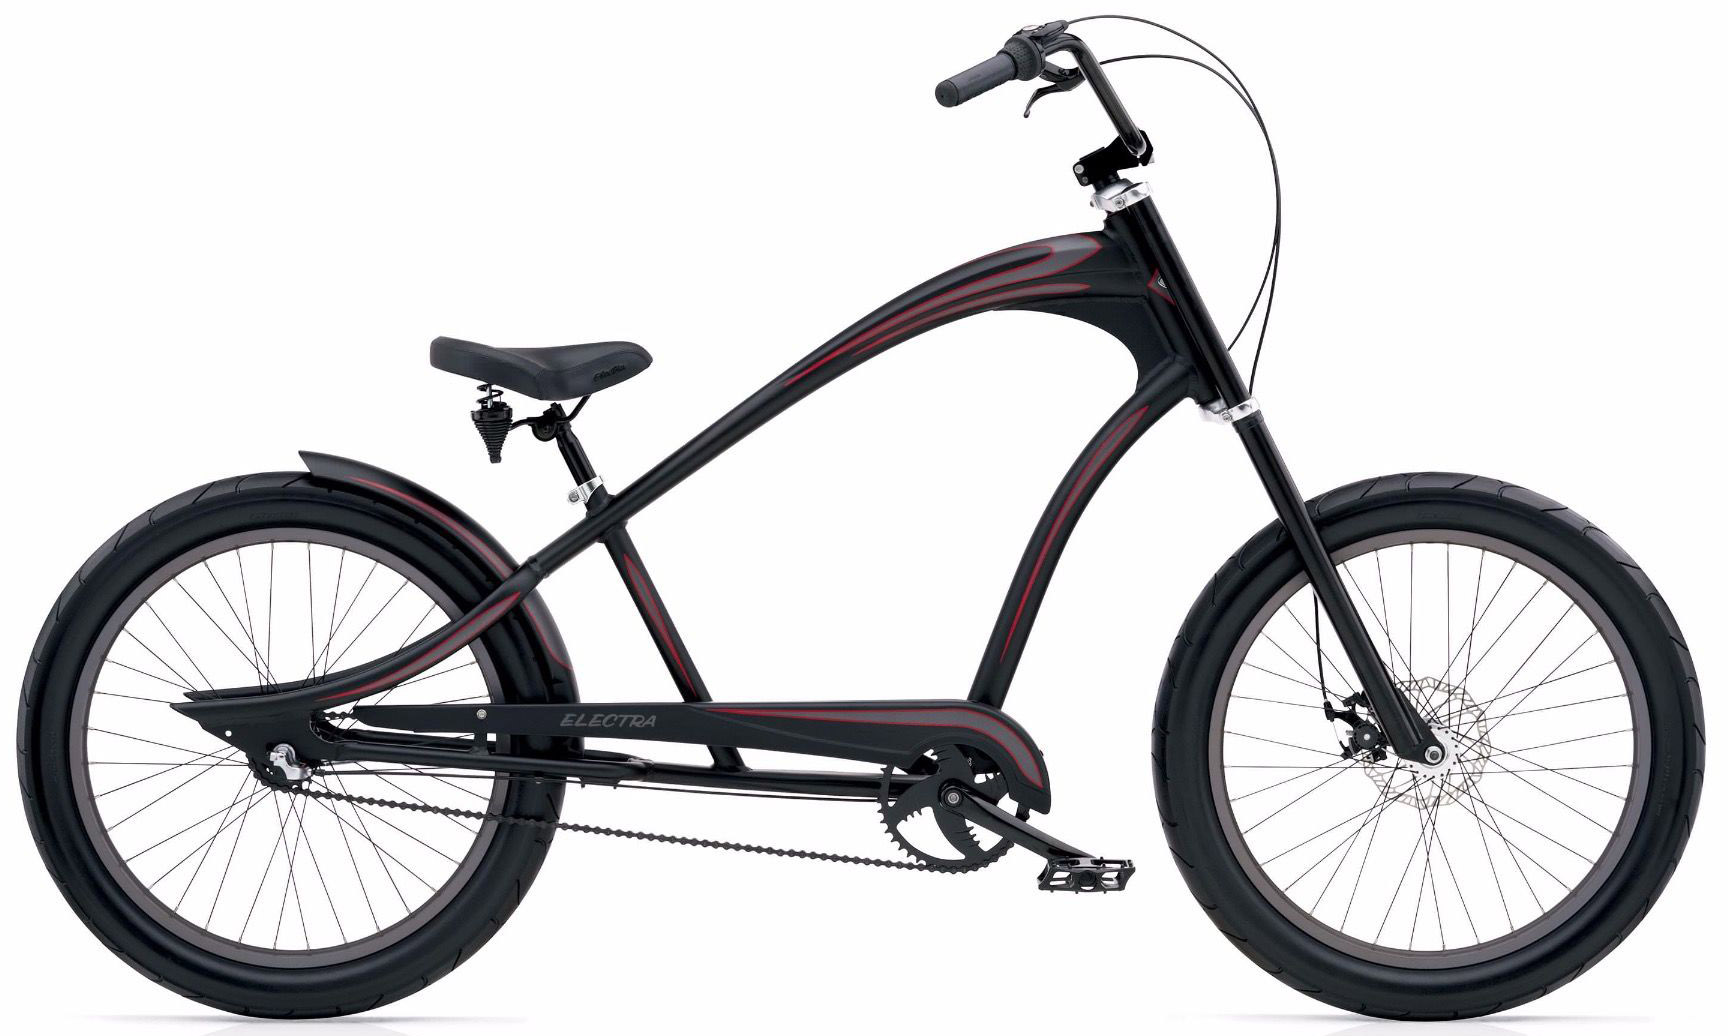  Отзывы о Подростковом велосипеде Electra Revil 3i 2020